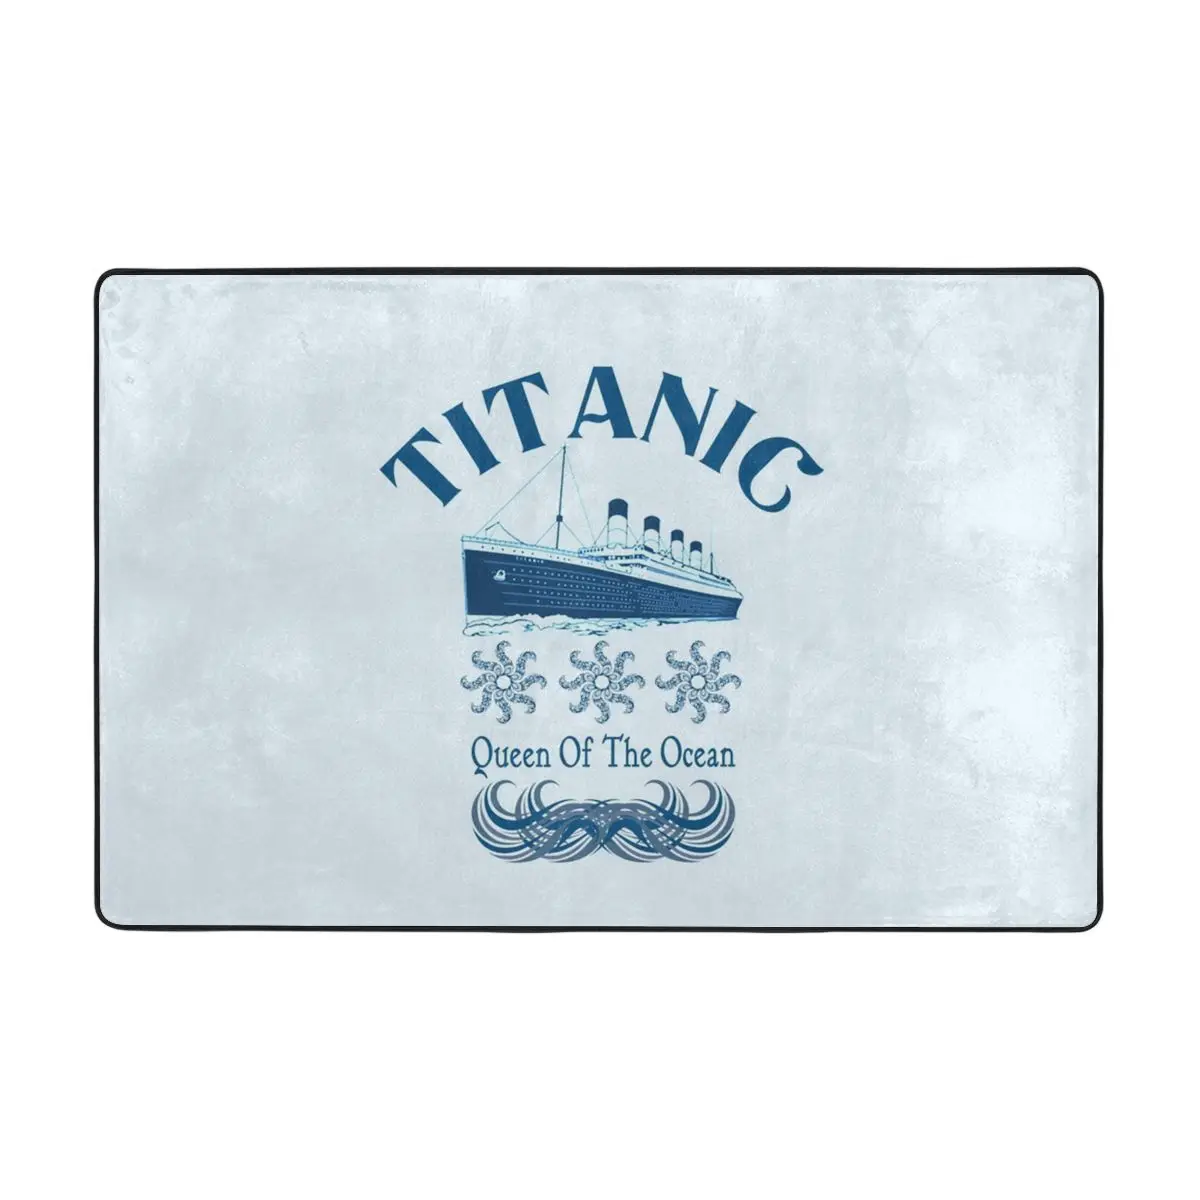 Titanic Queen Of The Ocean Doormat Carpet Mat Rug Polyester Non-Slip Floor Decor Bath Bathroom Kitchen Living Room 60x90